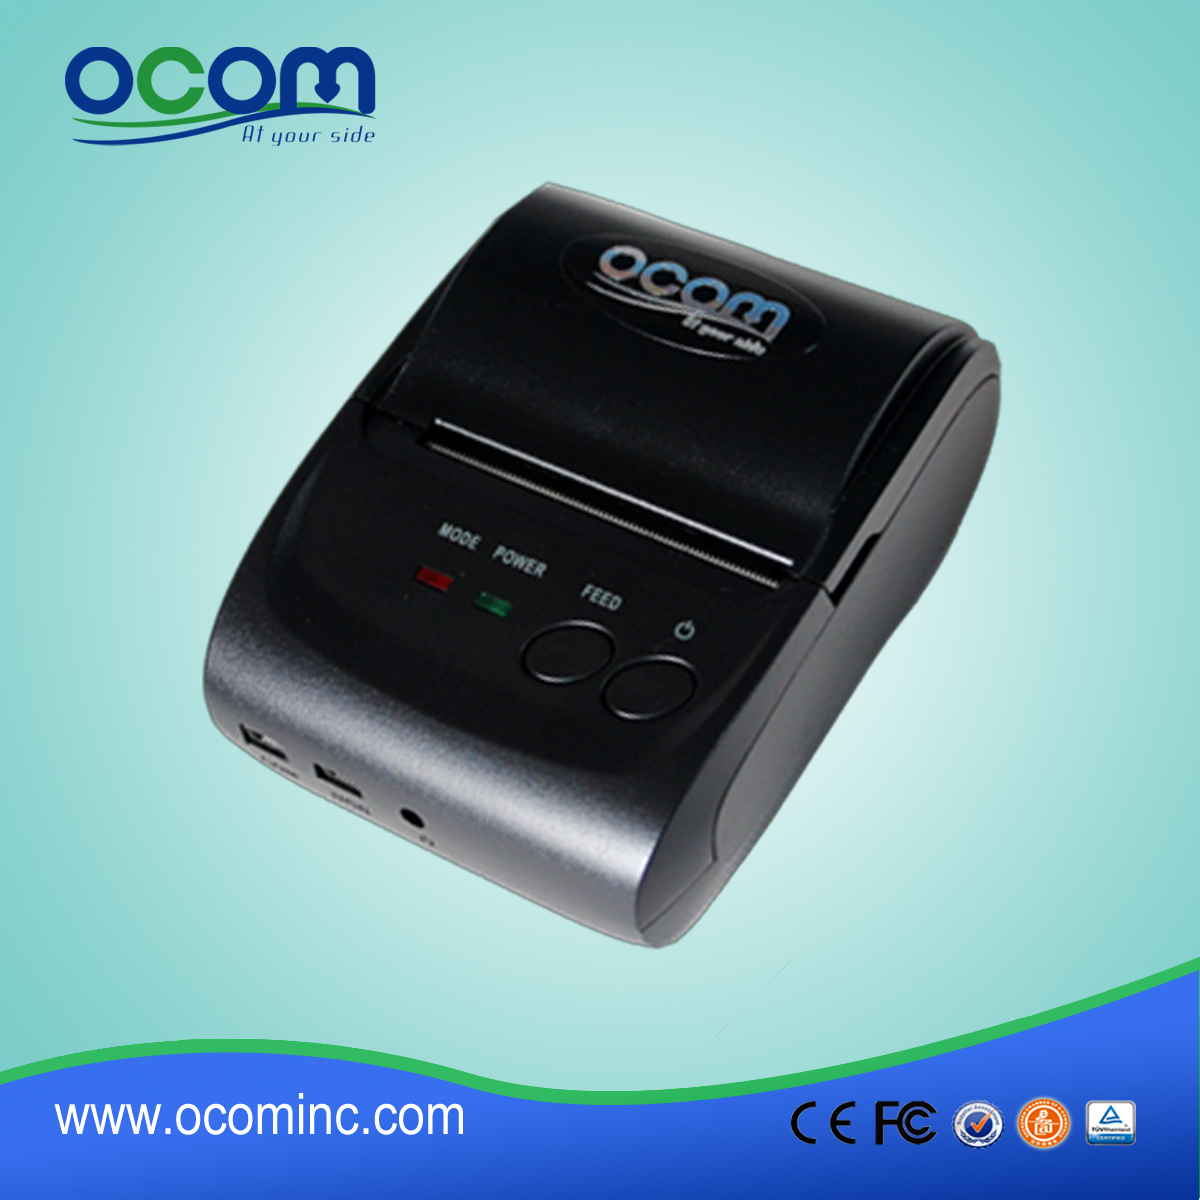 OCPP-M05: 2.015 mini impresora térmica de recibos, impresora térmica androide de alta calidad